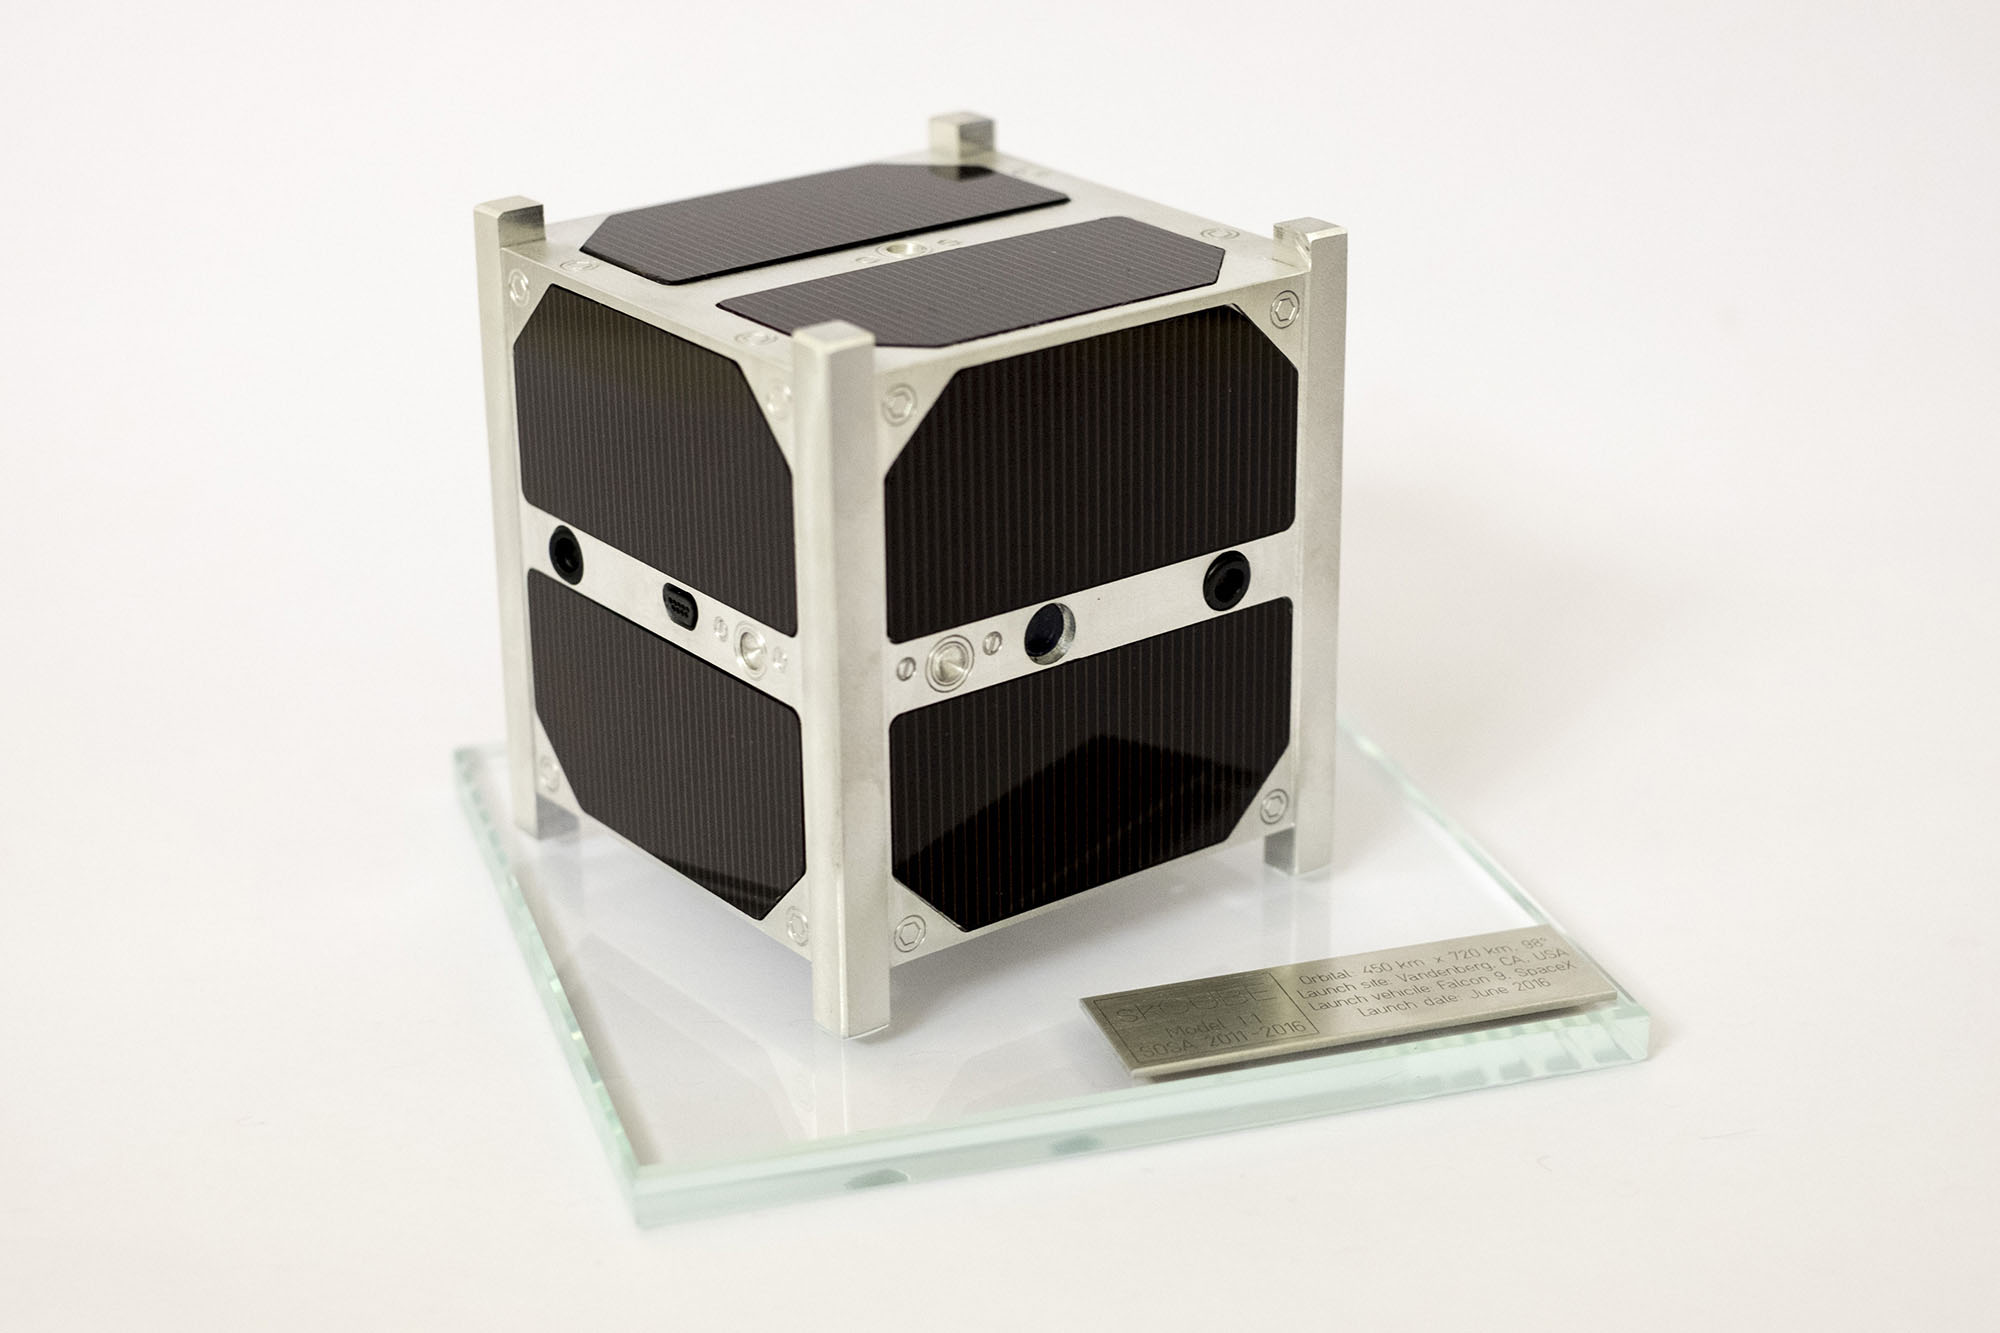 sk Cube model družice